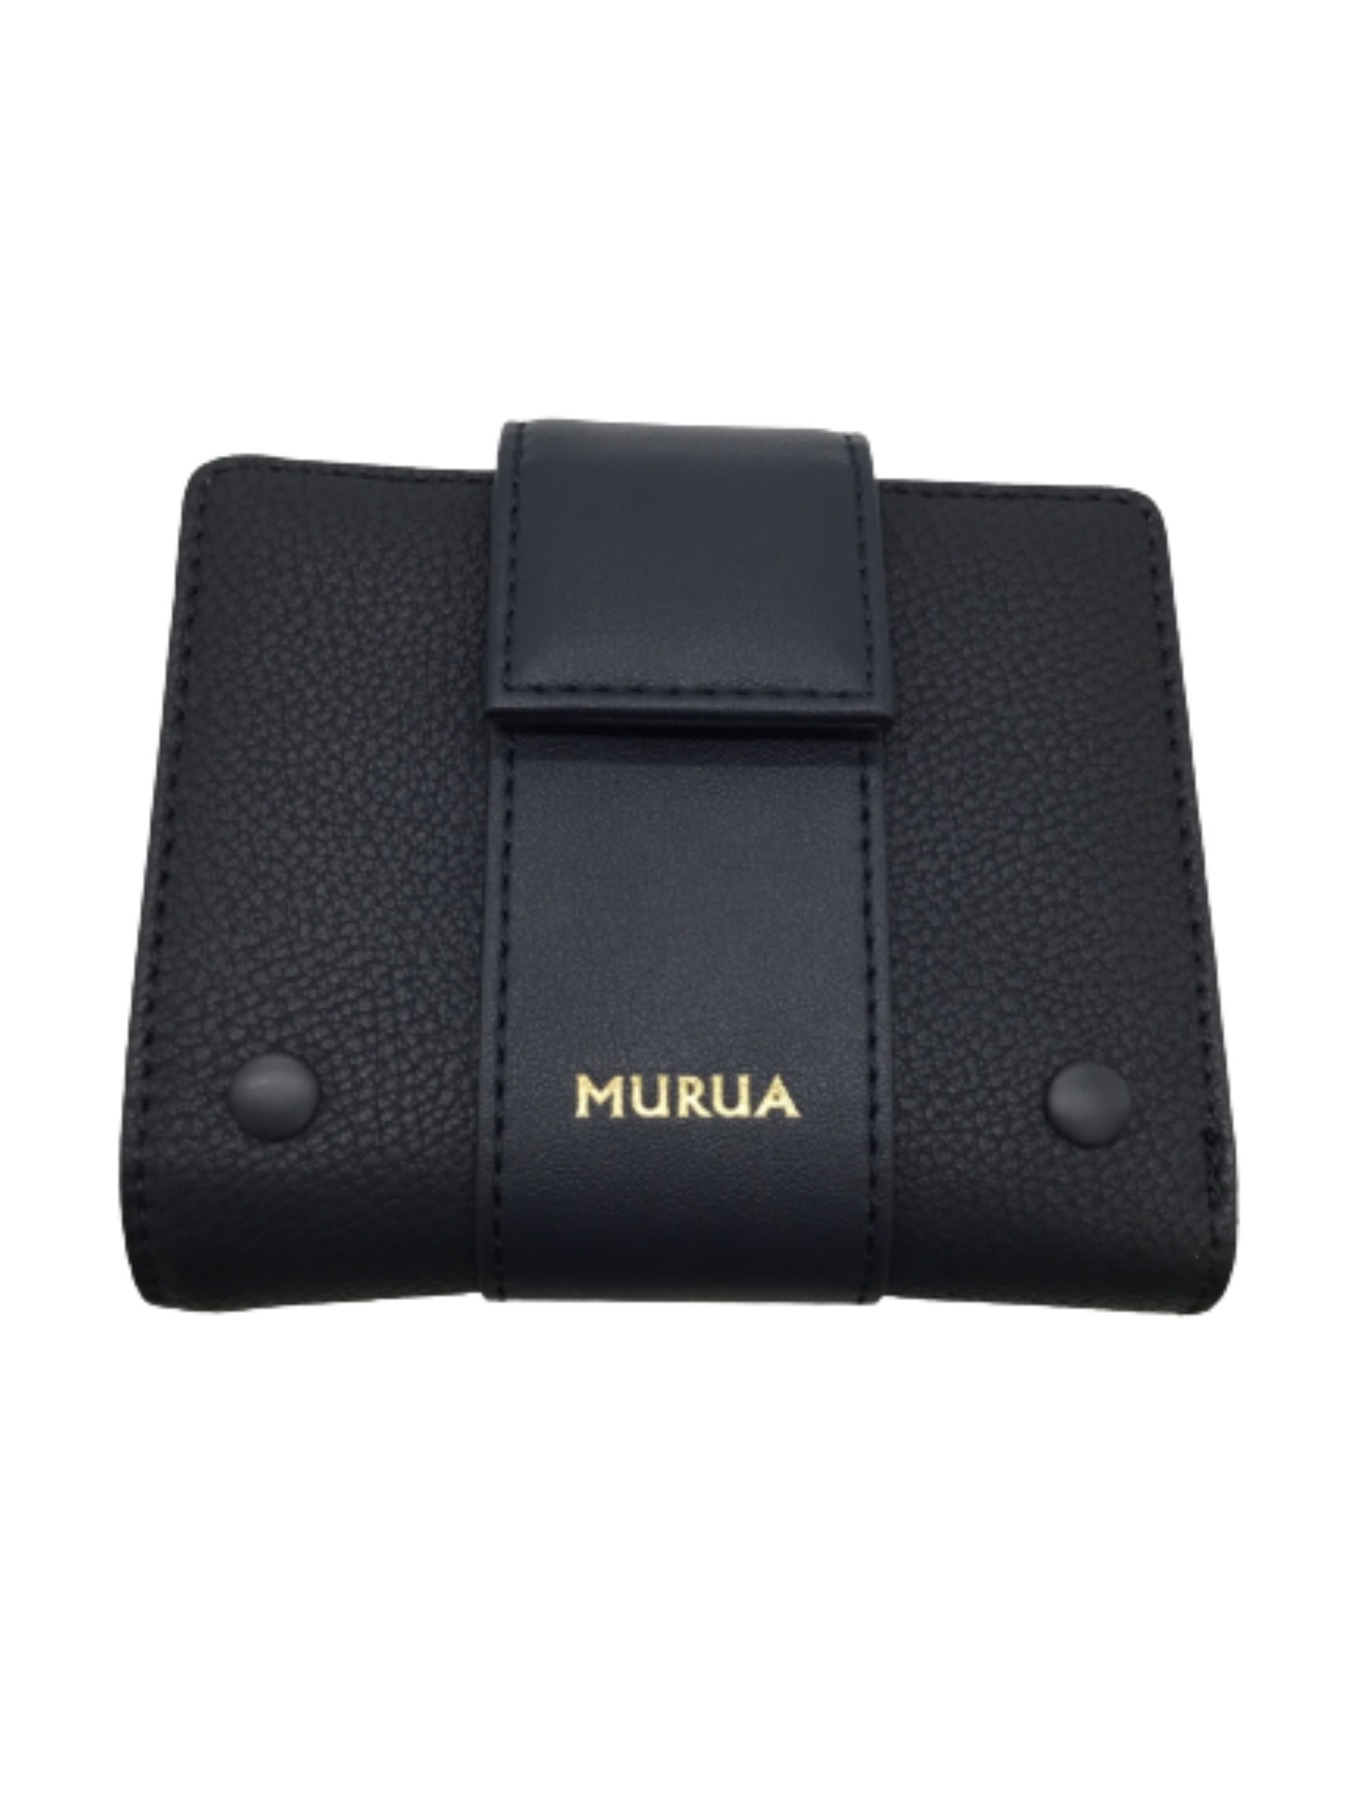 中古・古着通販】MURUA (ムルーア) 2つ折り財布 ネイビー 未使用品